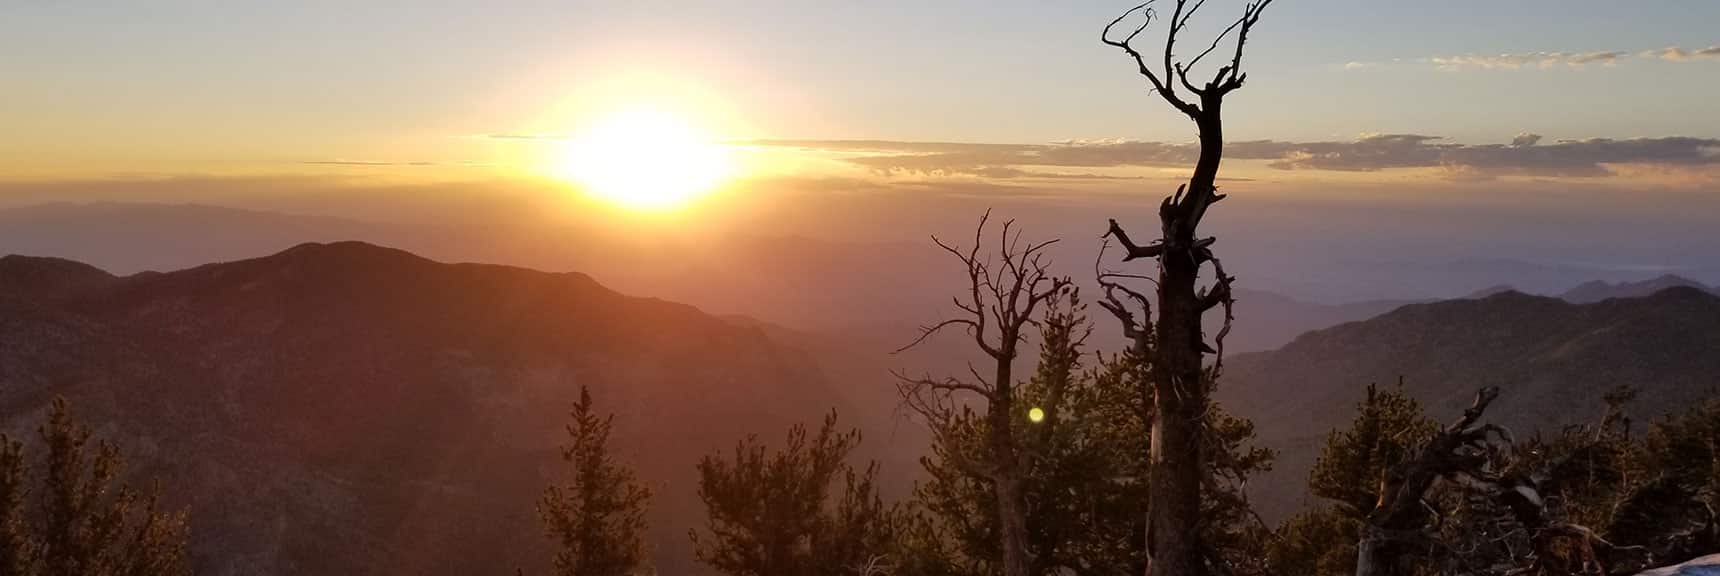 Sunrise on the South Ridge of Kyle Canyon